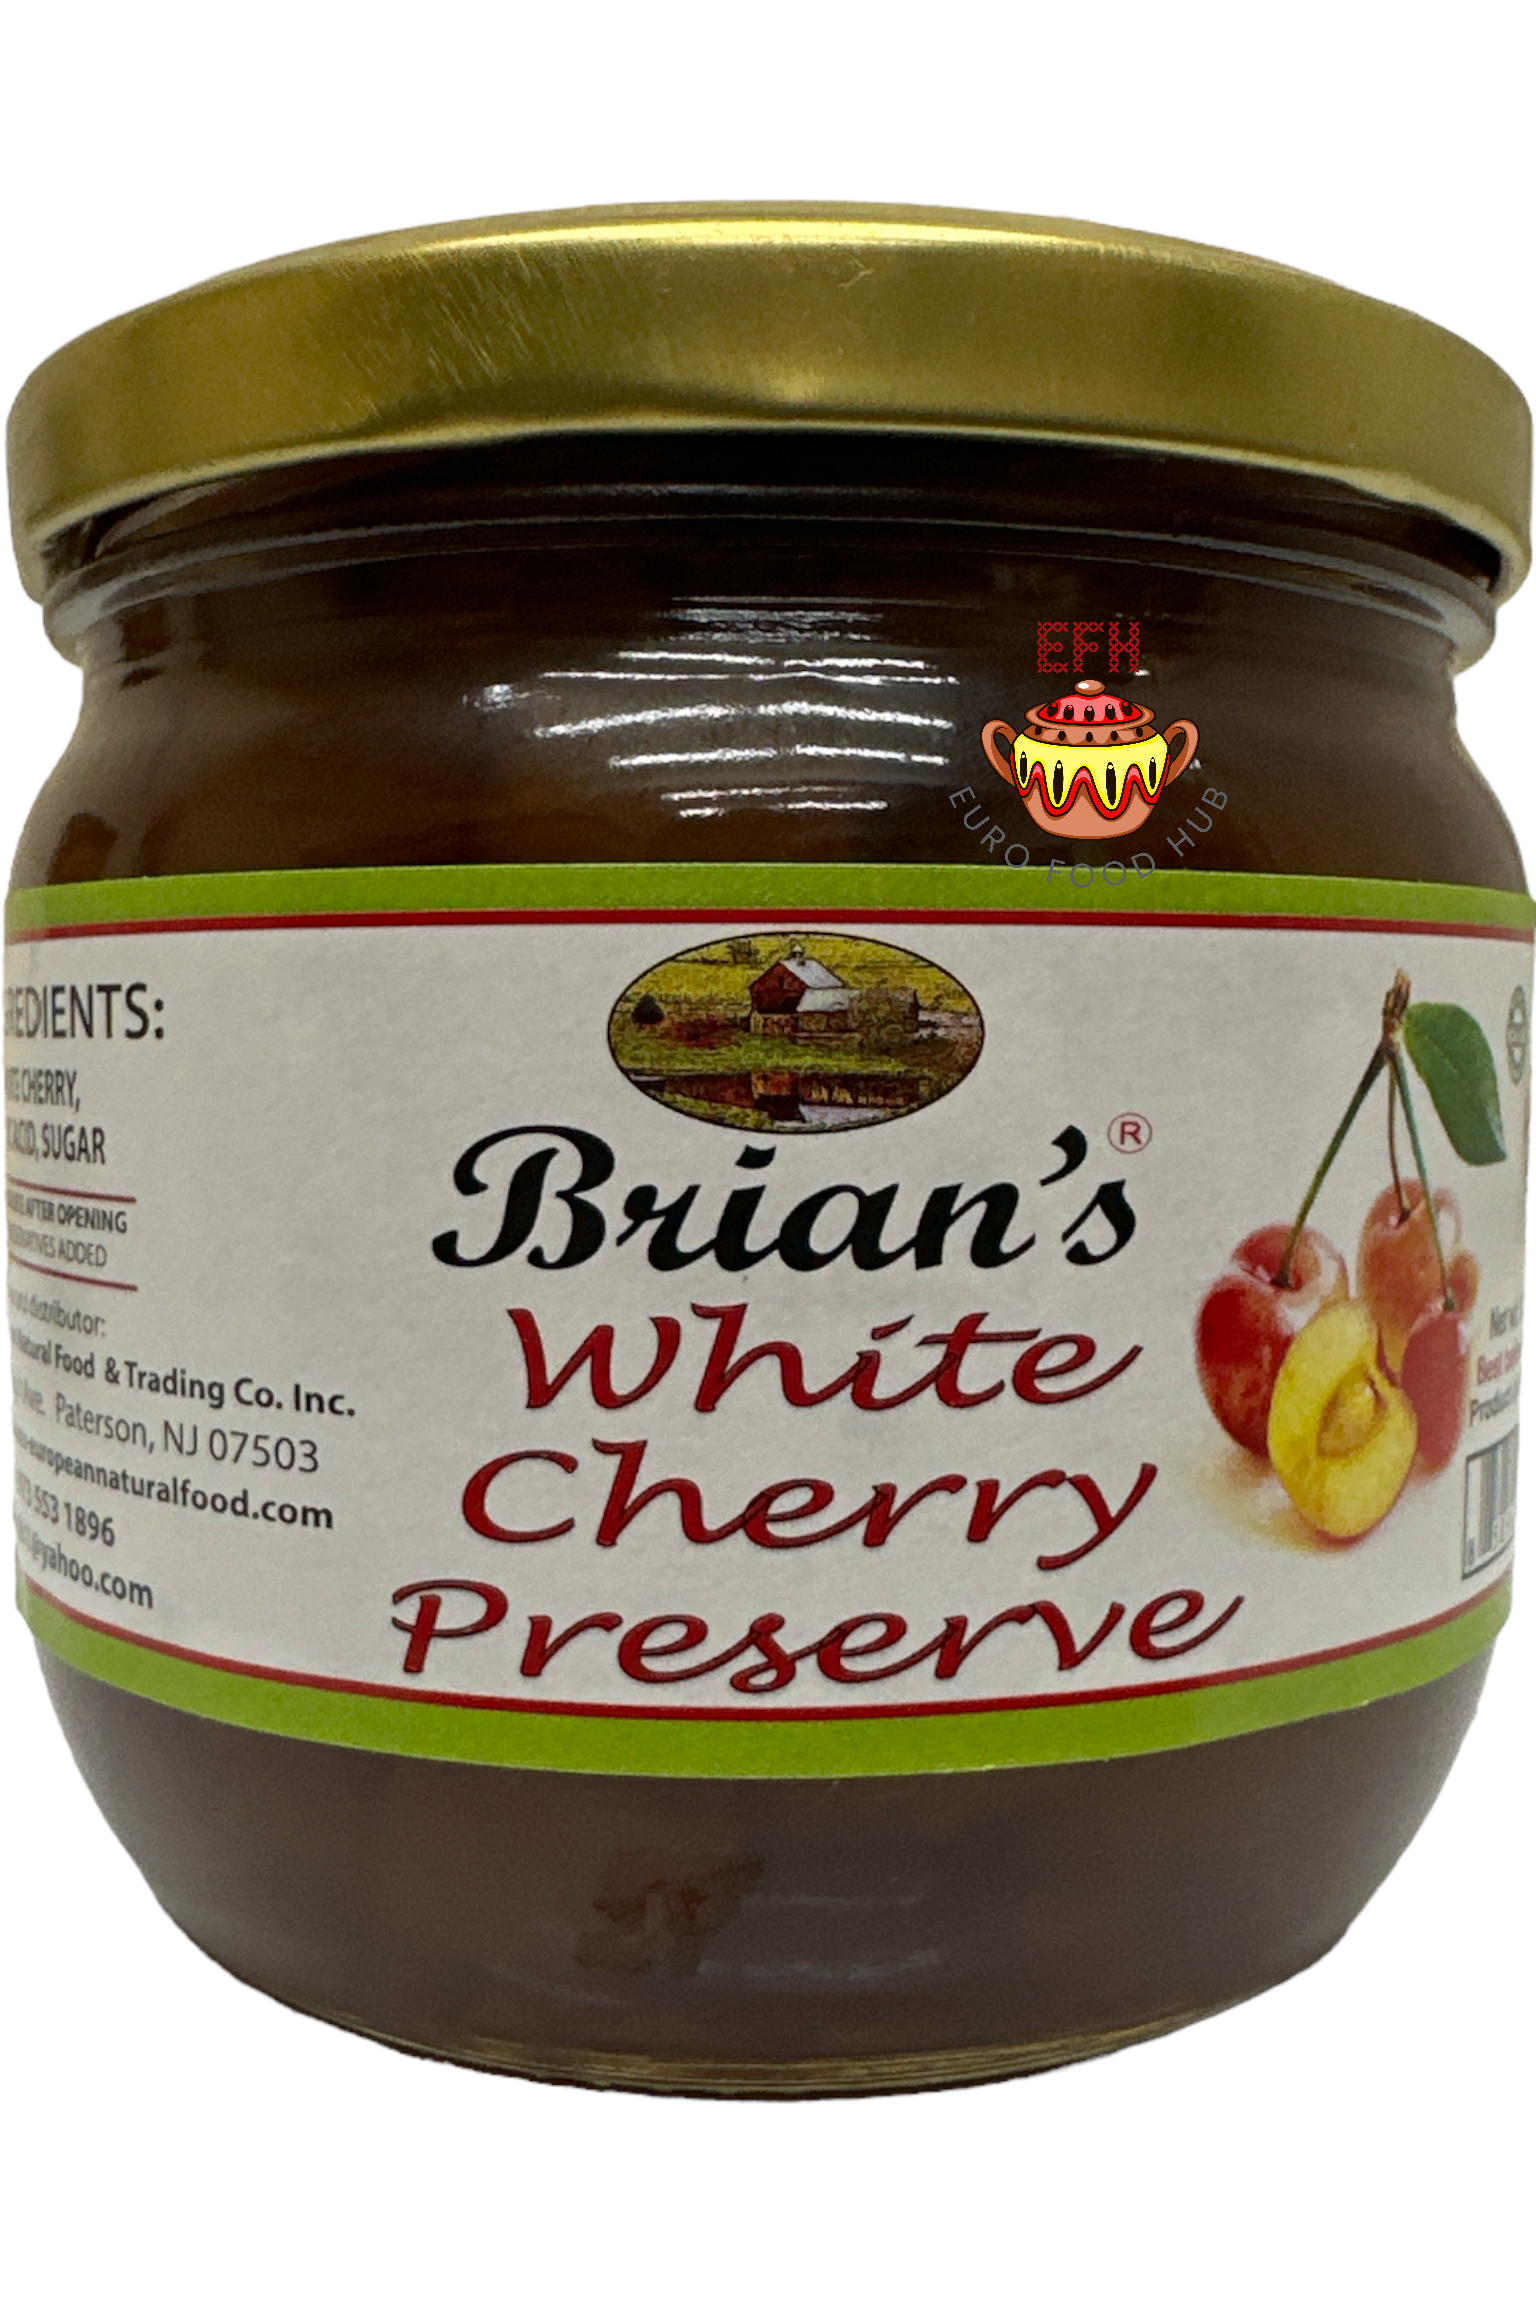 Brian's White Cherry Preserve